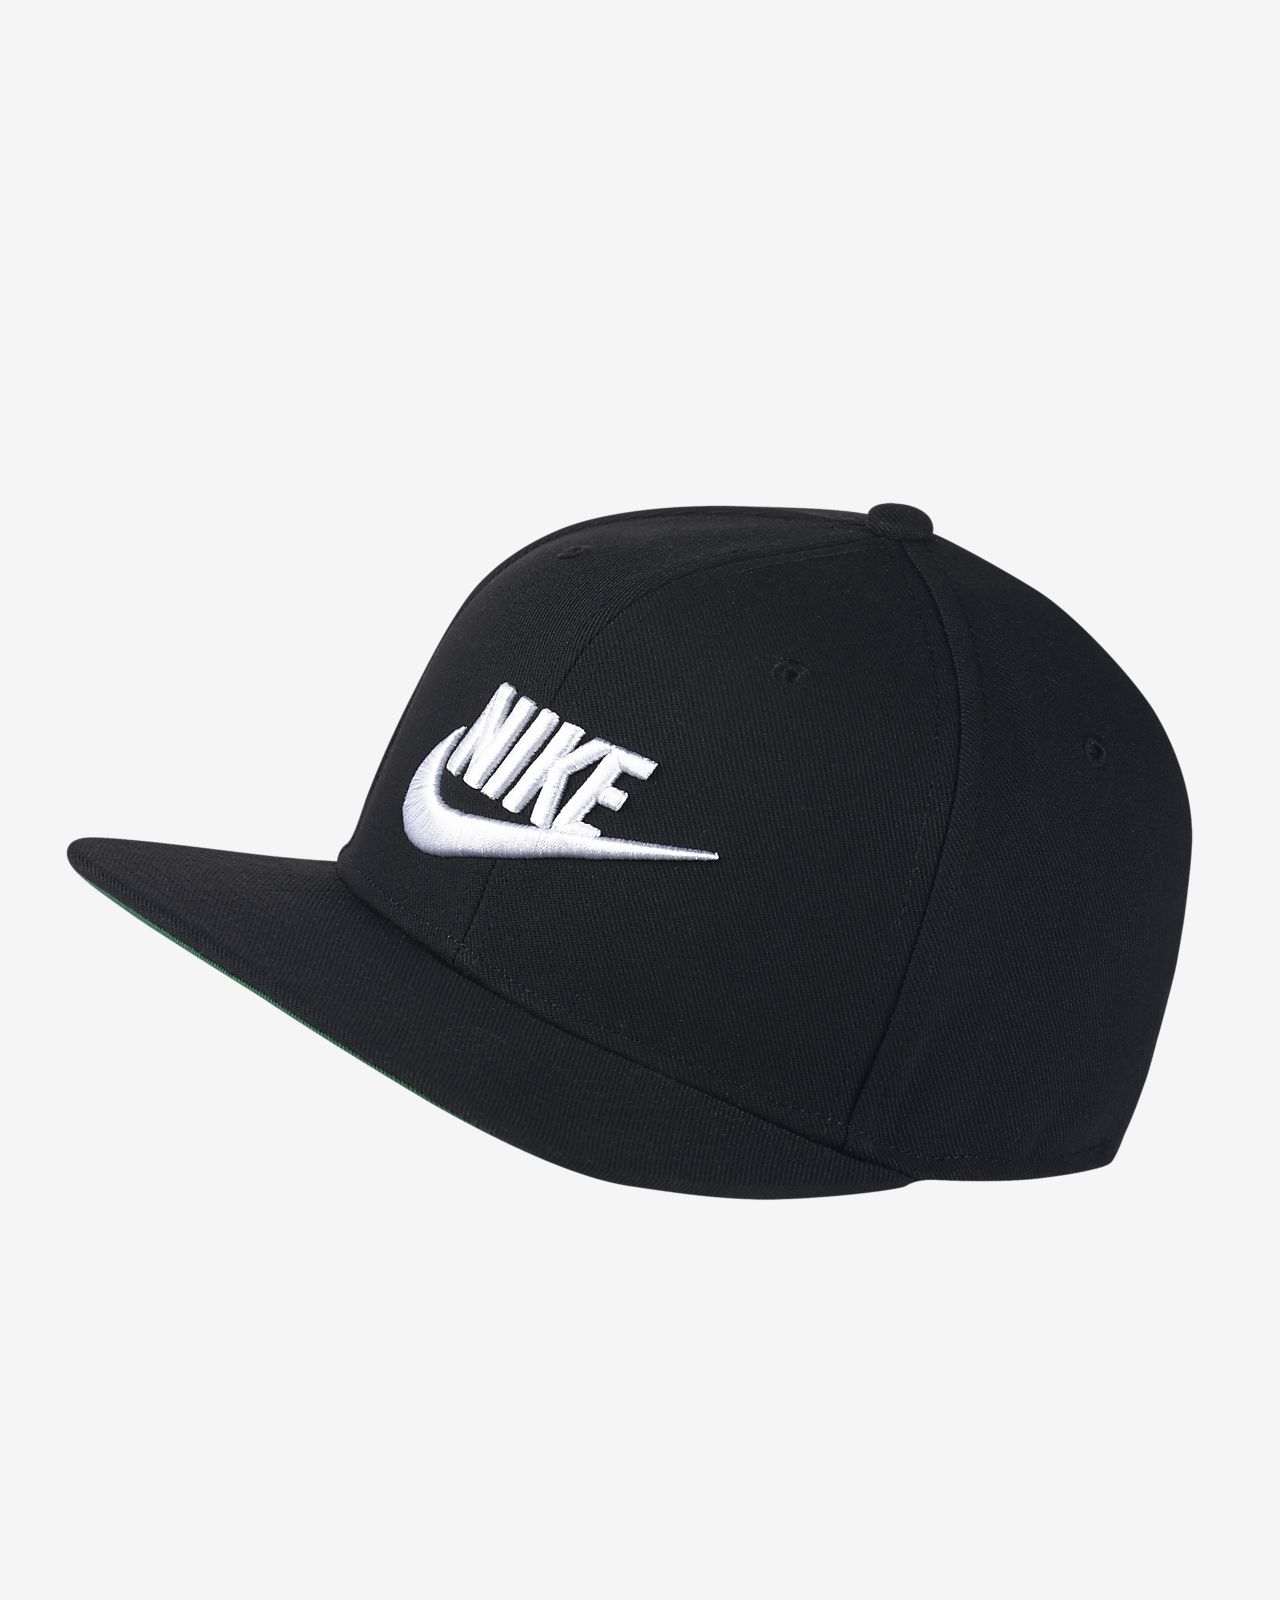 Nike Sportswear Pro Adjustable Hat. Nike.com